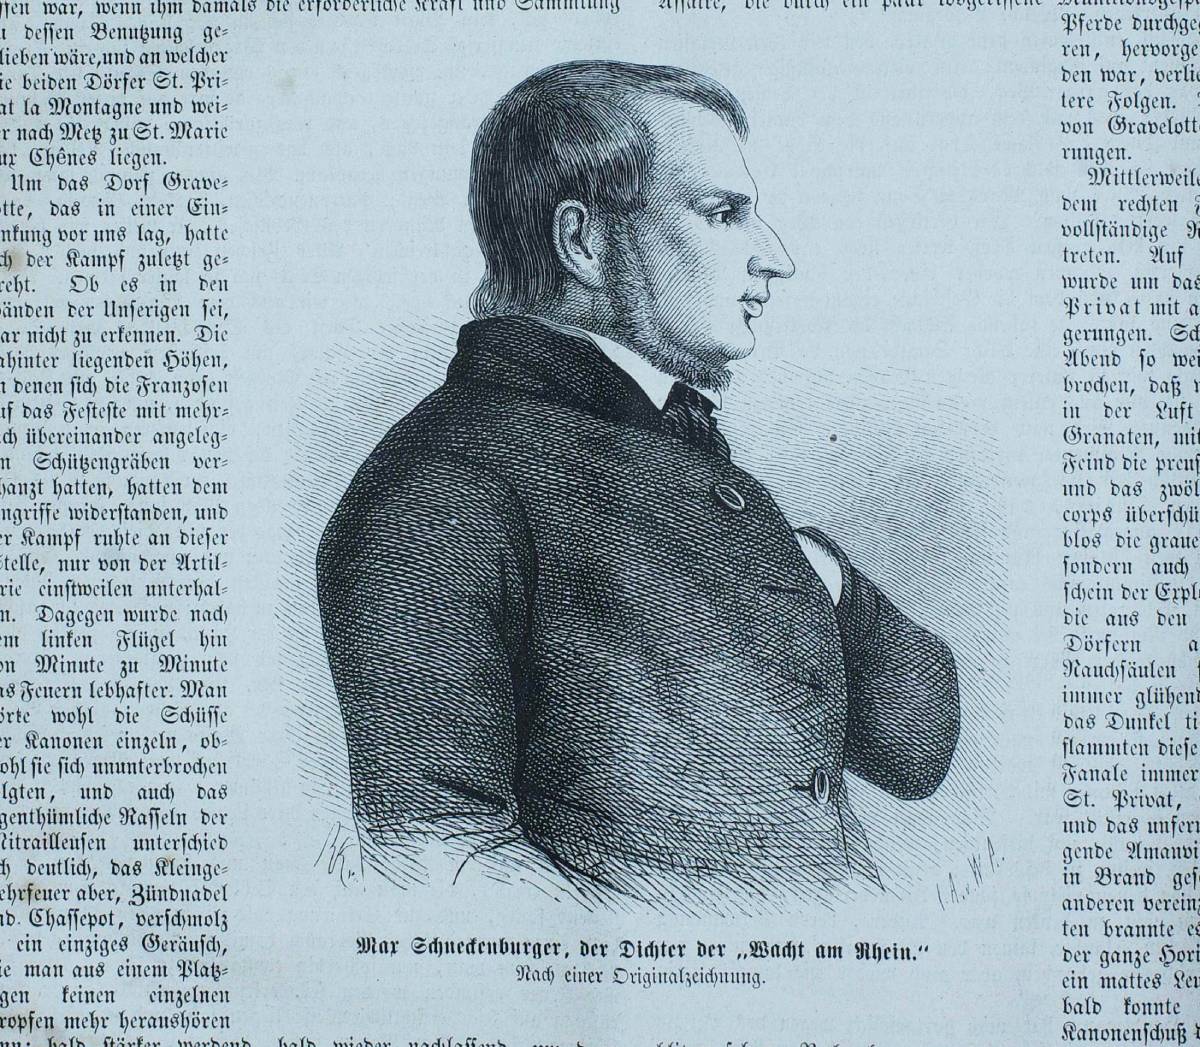 Max Schneckenburger, Porträt in der „Gartenlaube“, 1870. Quelle Wikimedia commons